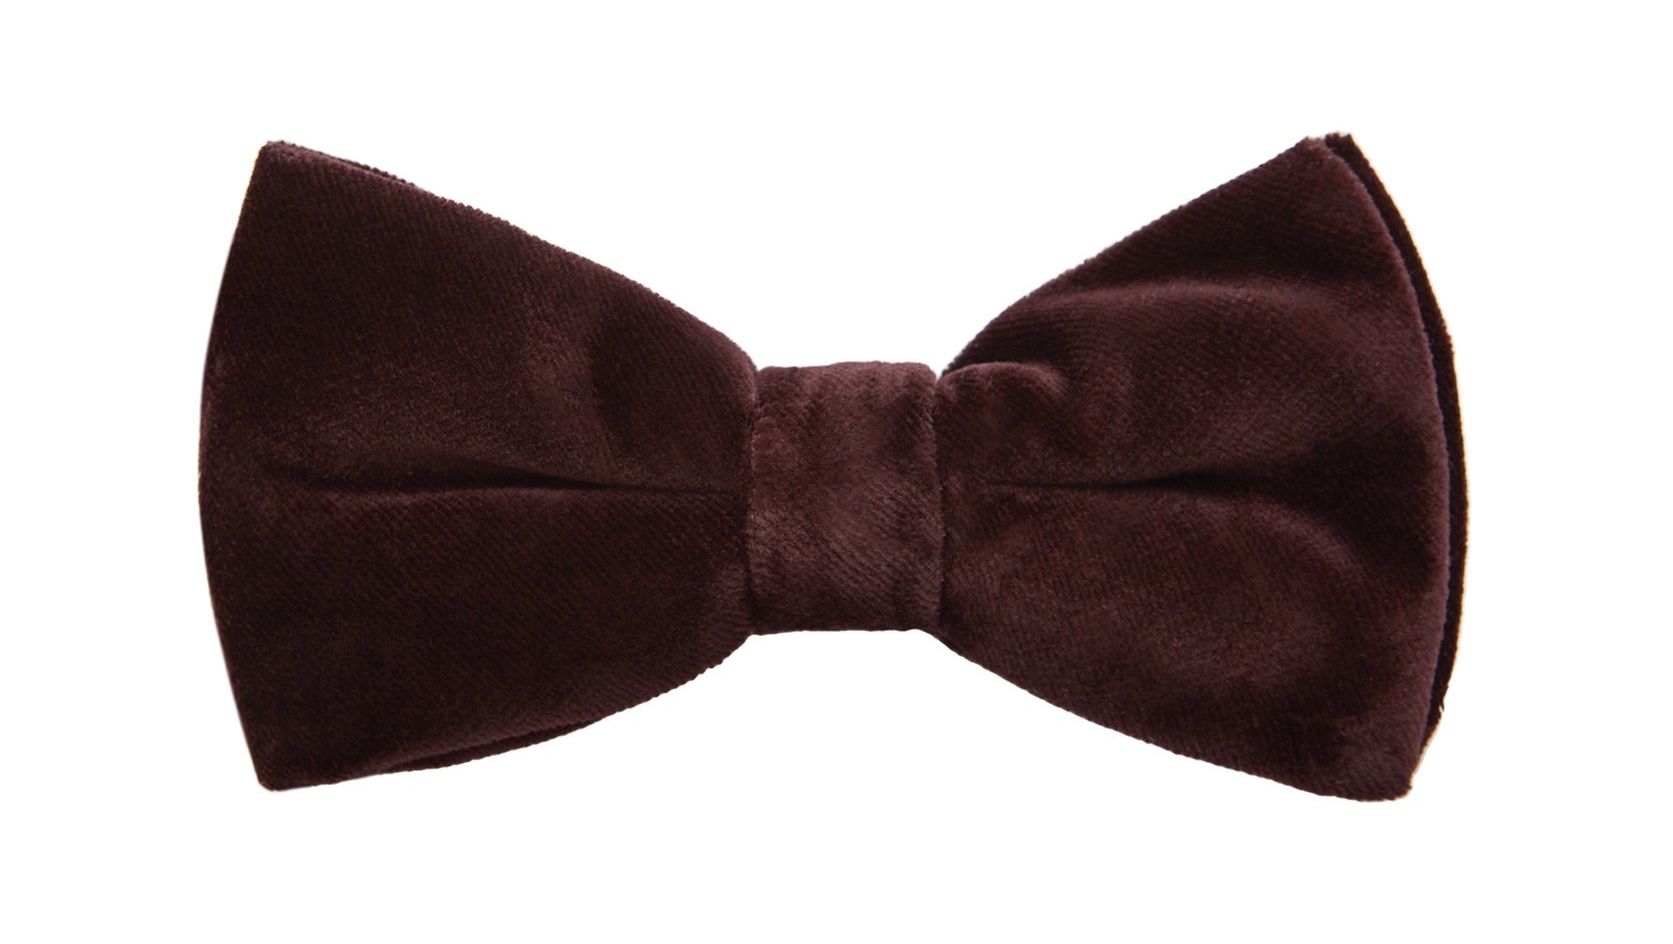 Burgundy Velvet Bow Tie